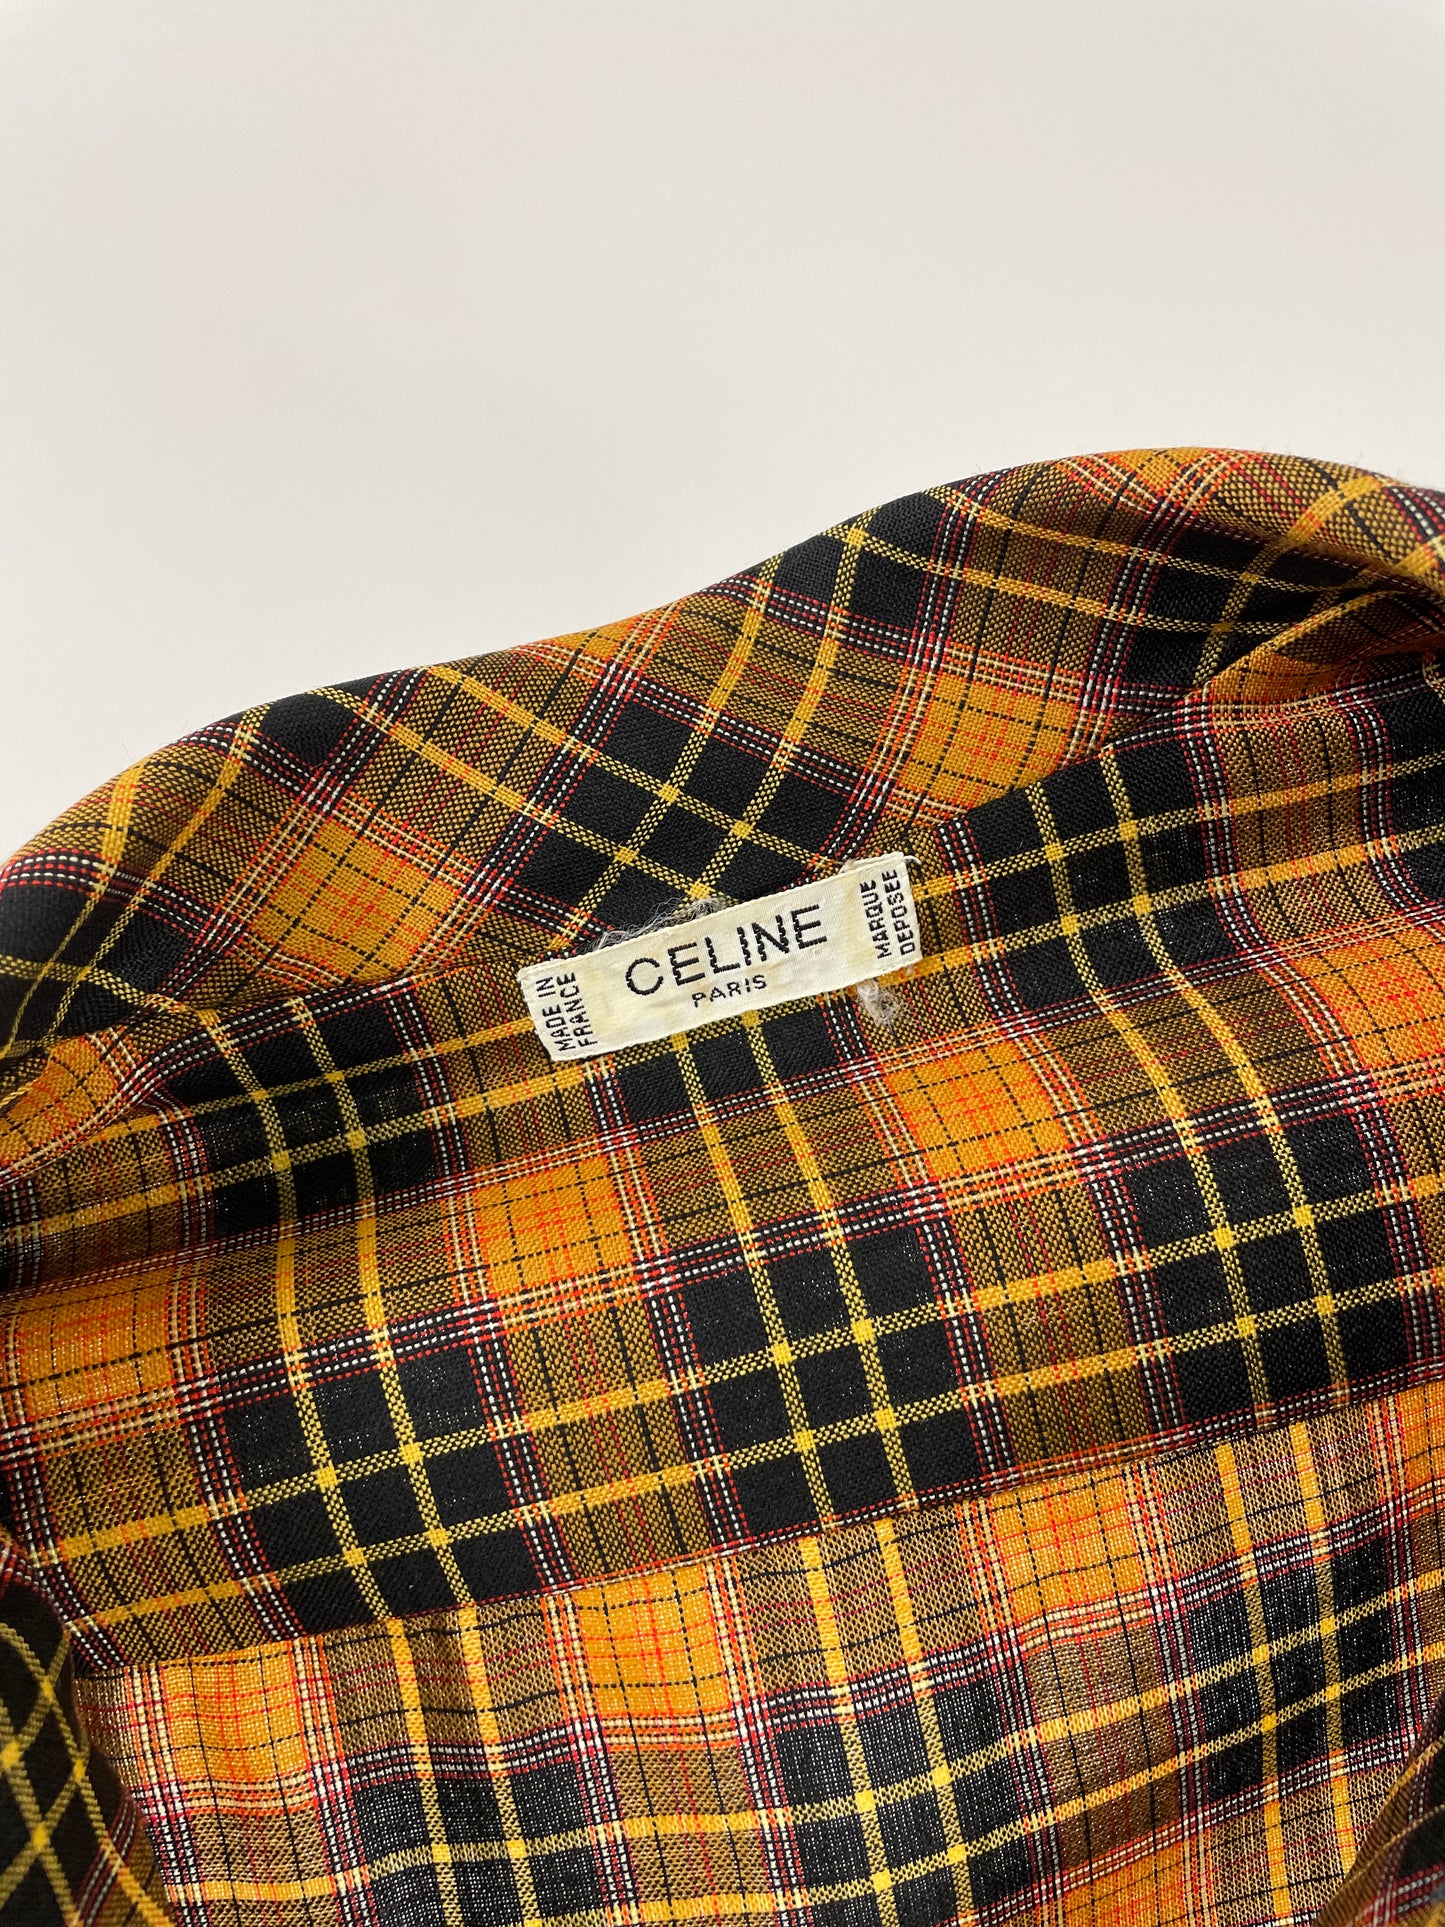 Celine Paris 1980s shirt